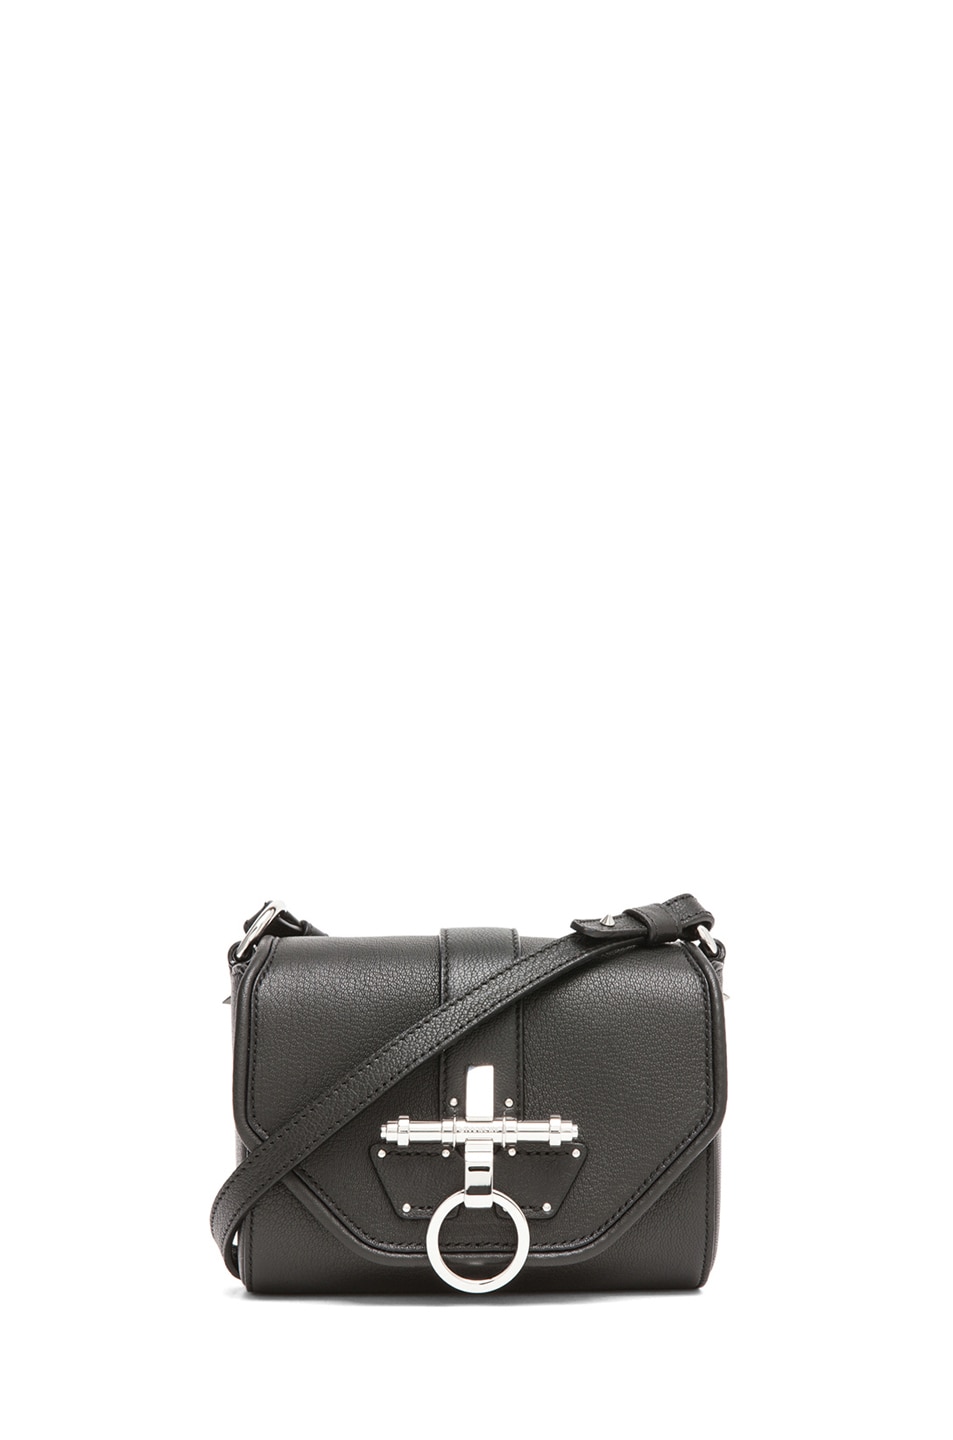 Givenchy Obsedia in Black | FWRD